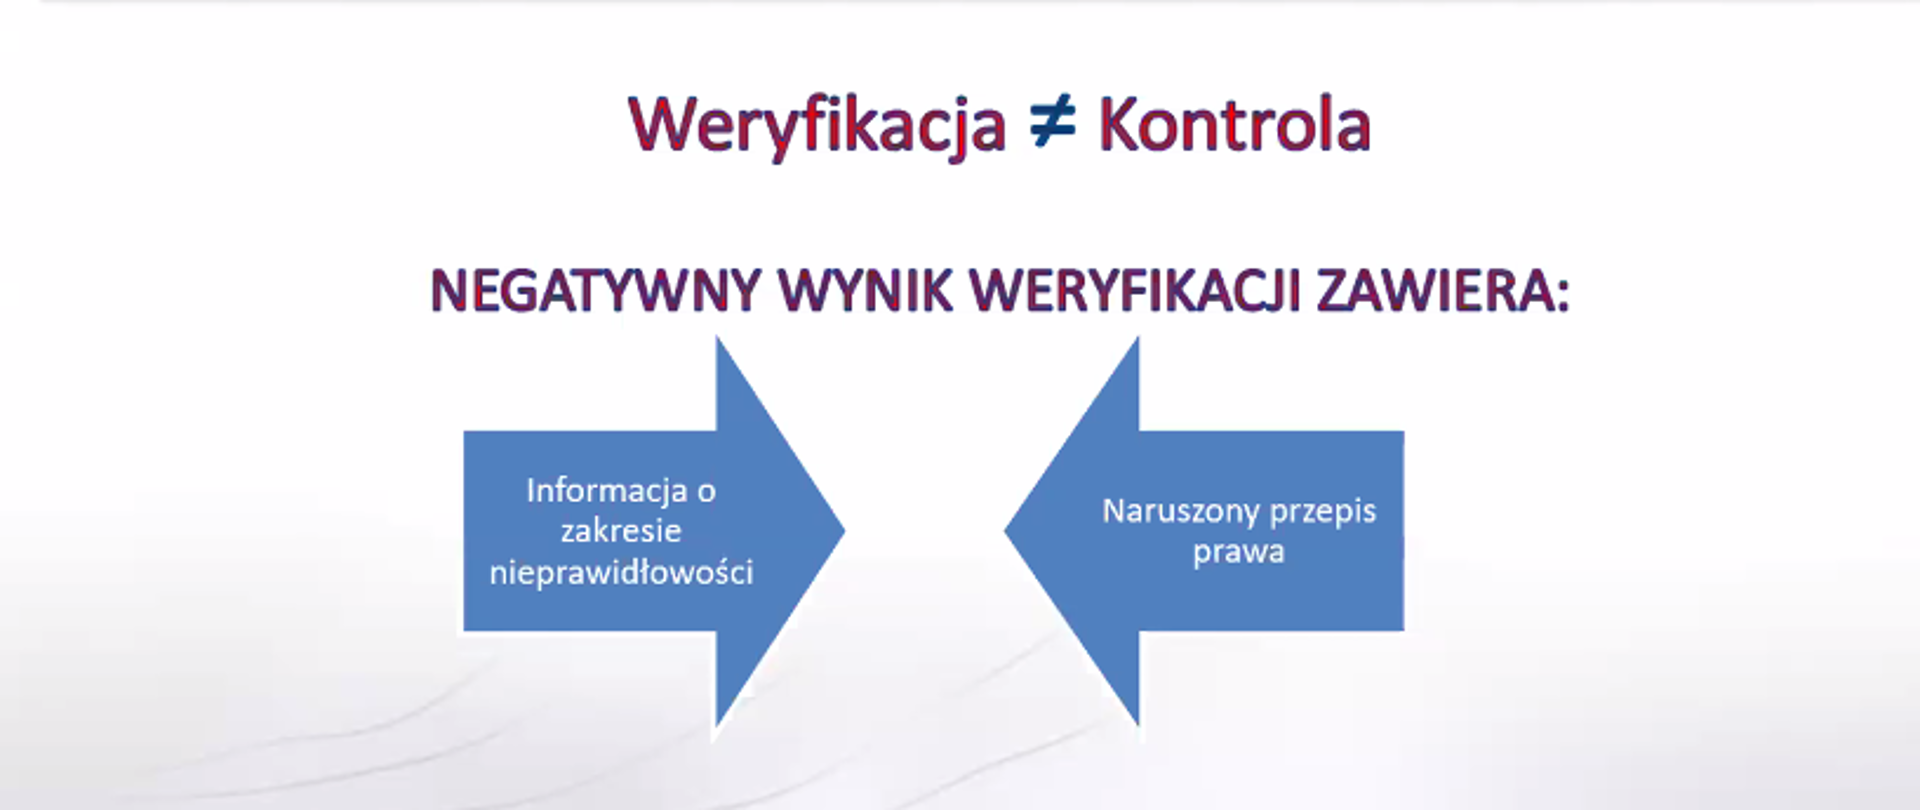 Zrzut ekranu z programu ZOOM. Po lewej fragment prezentacji podczas wideokonferencji "Szkolenie dla weryfikatorów", a po prawej Agata Cieślińska - pracownik GUGiK podczas prezentacji.